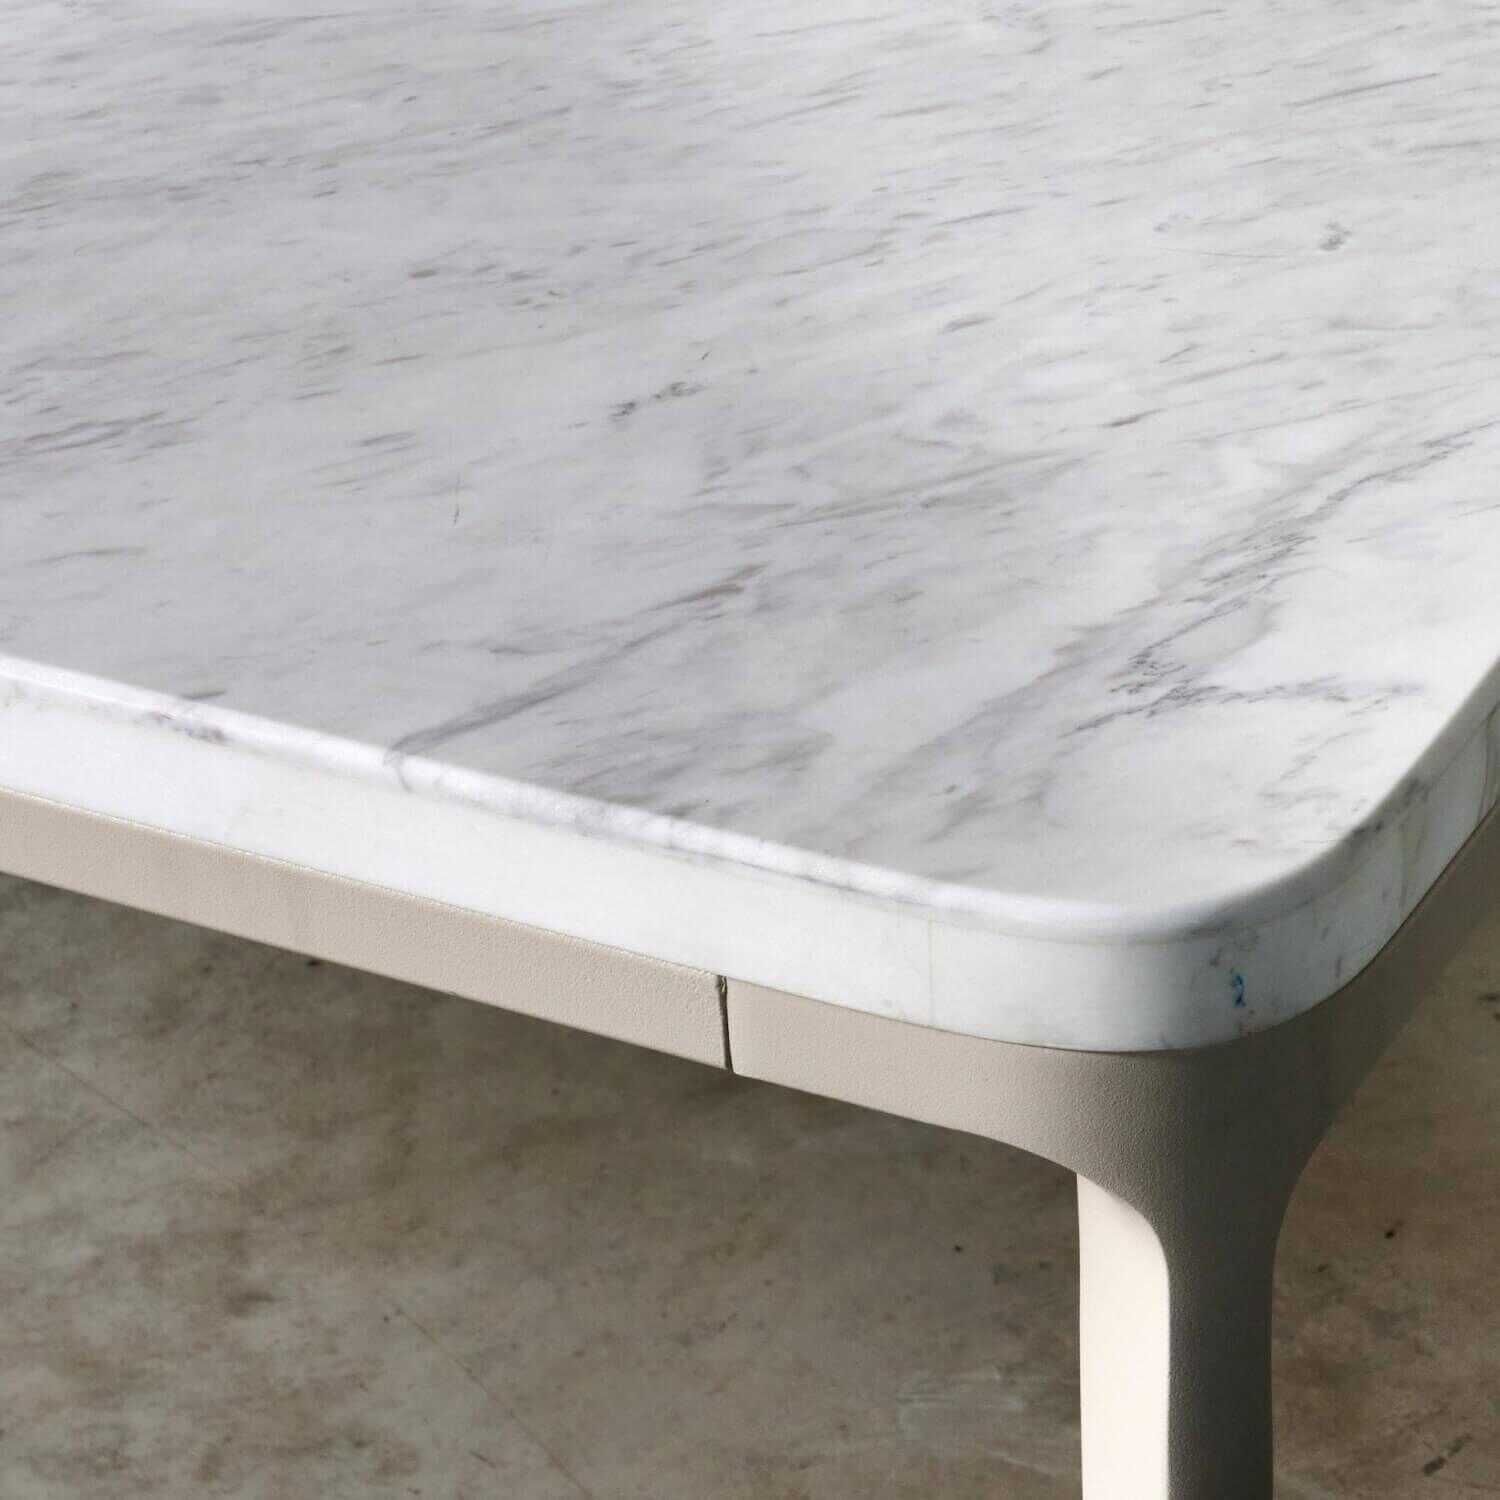 Tisch Outdoor Parklife Tischplatte Marmor Farbe Weiss Gestell Aluminium Farbe Tuff